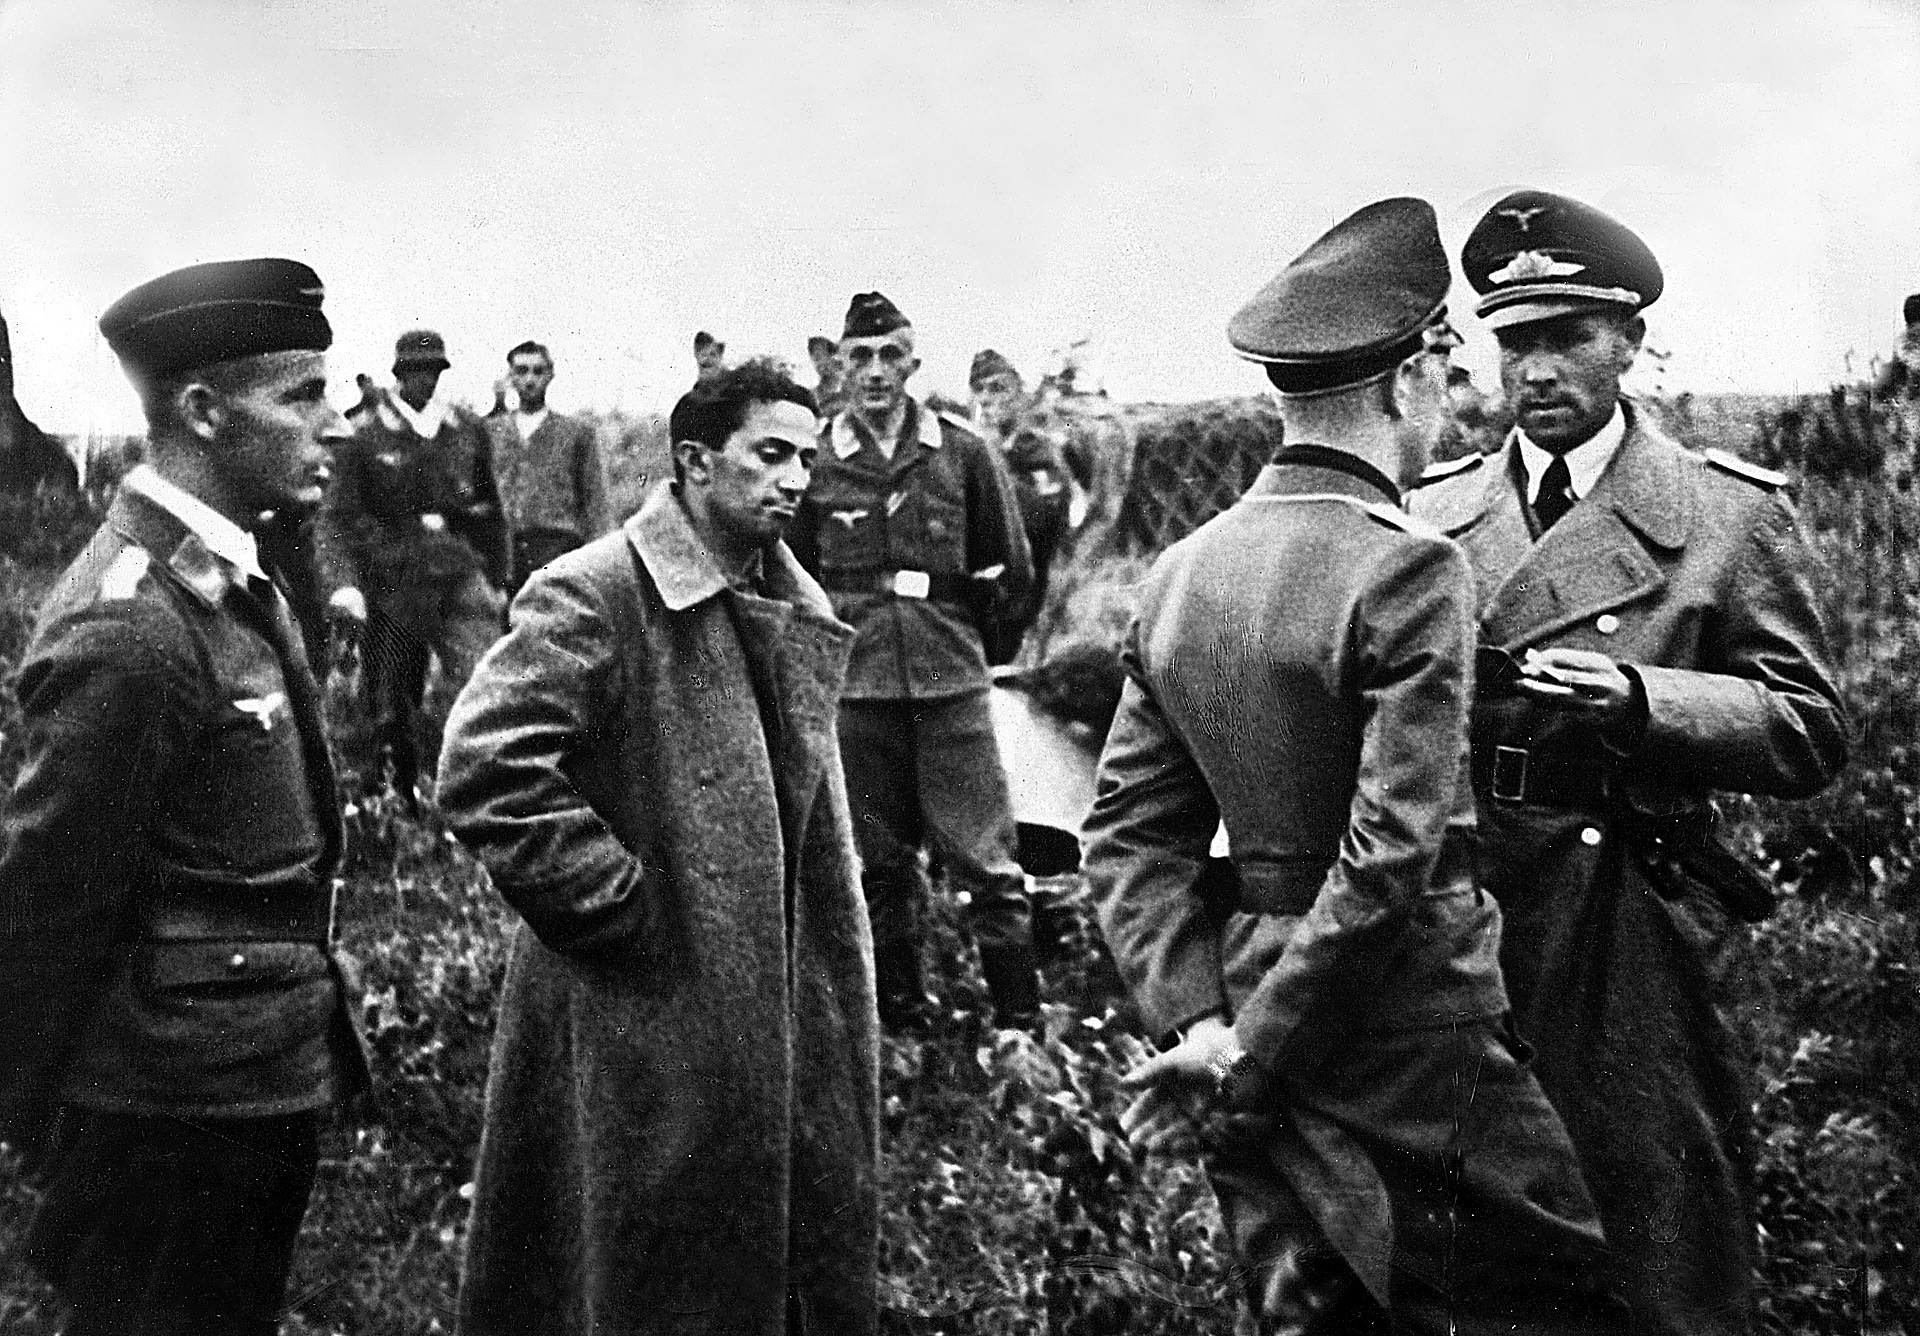 Il primogenito di Stalin, Yakov Jugashvili, fu catturato dai tedeschi durante la Seconda guerra mondiale e non fece ritorno vivo. In questa foto è stato ritratto circondato da alcuni ufficiali tedeschi 